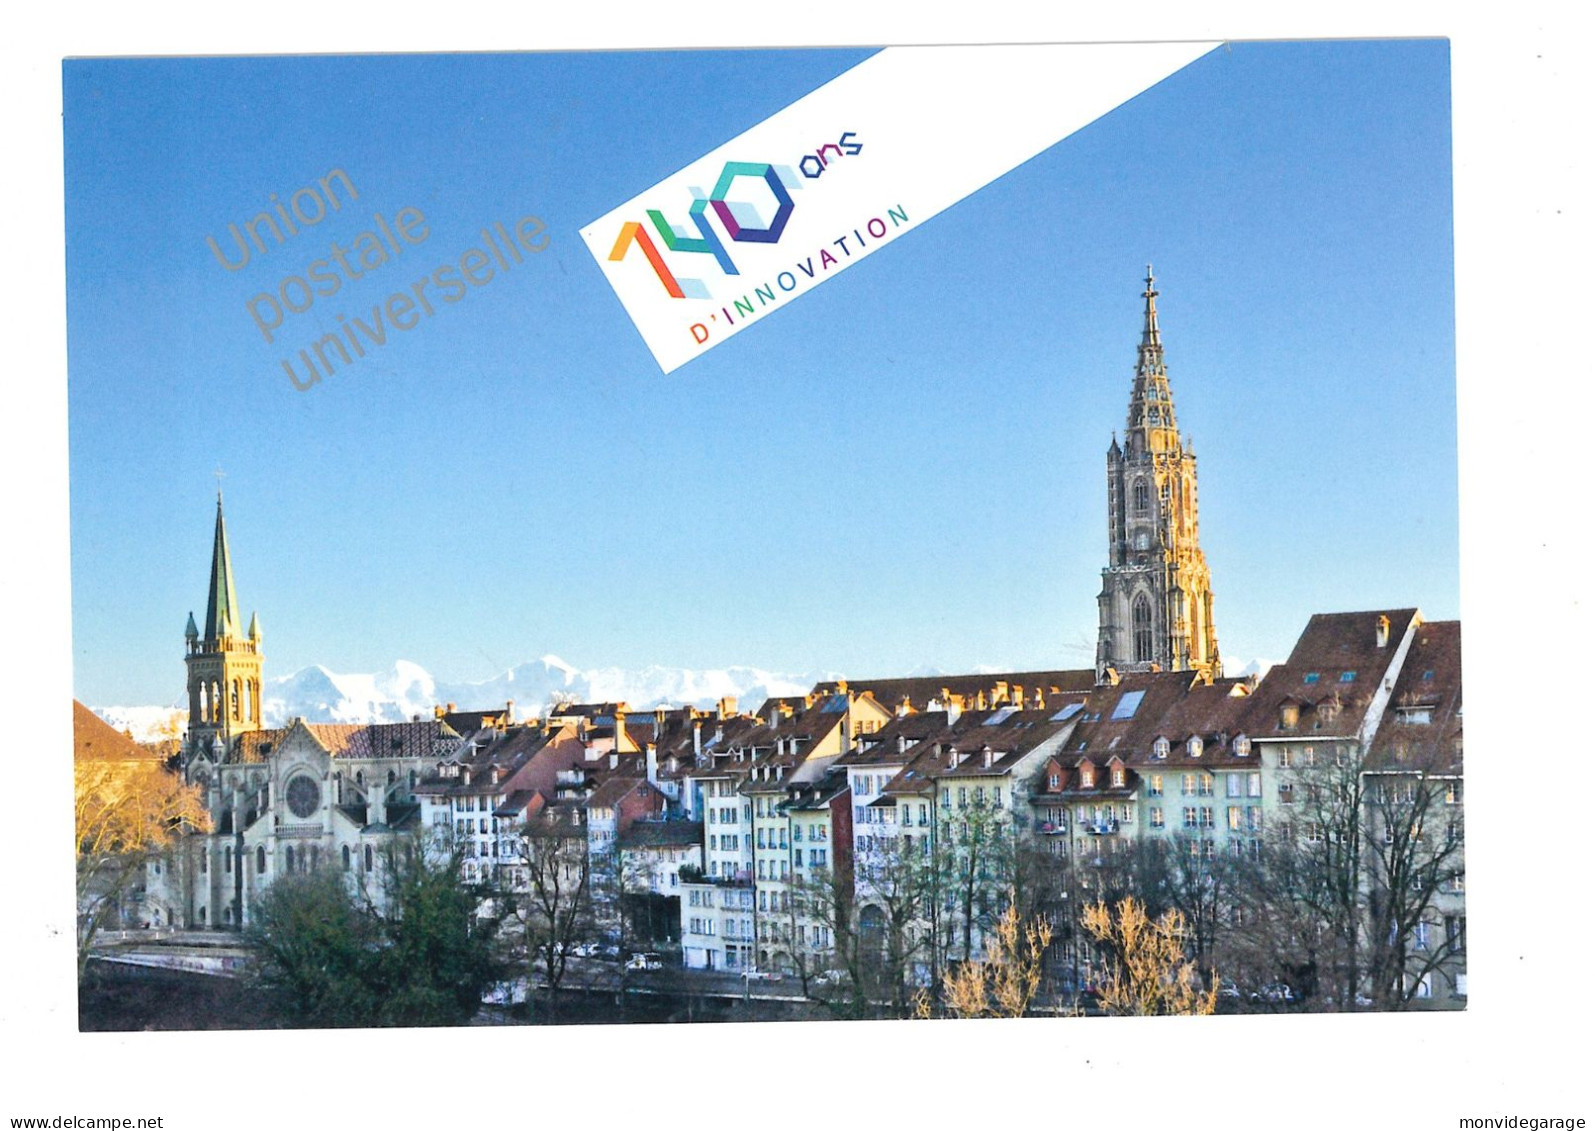 140 Ans De L'Union Postale Universelle - 09 10 2014 - UPU 071 - Covers & Documents